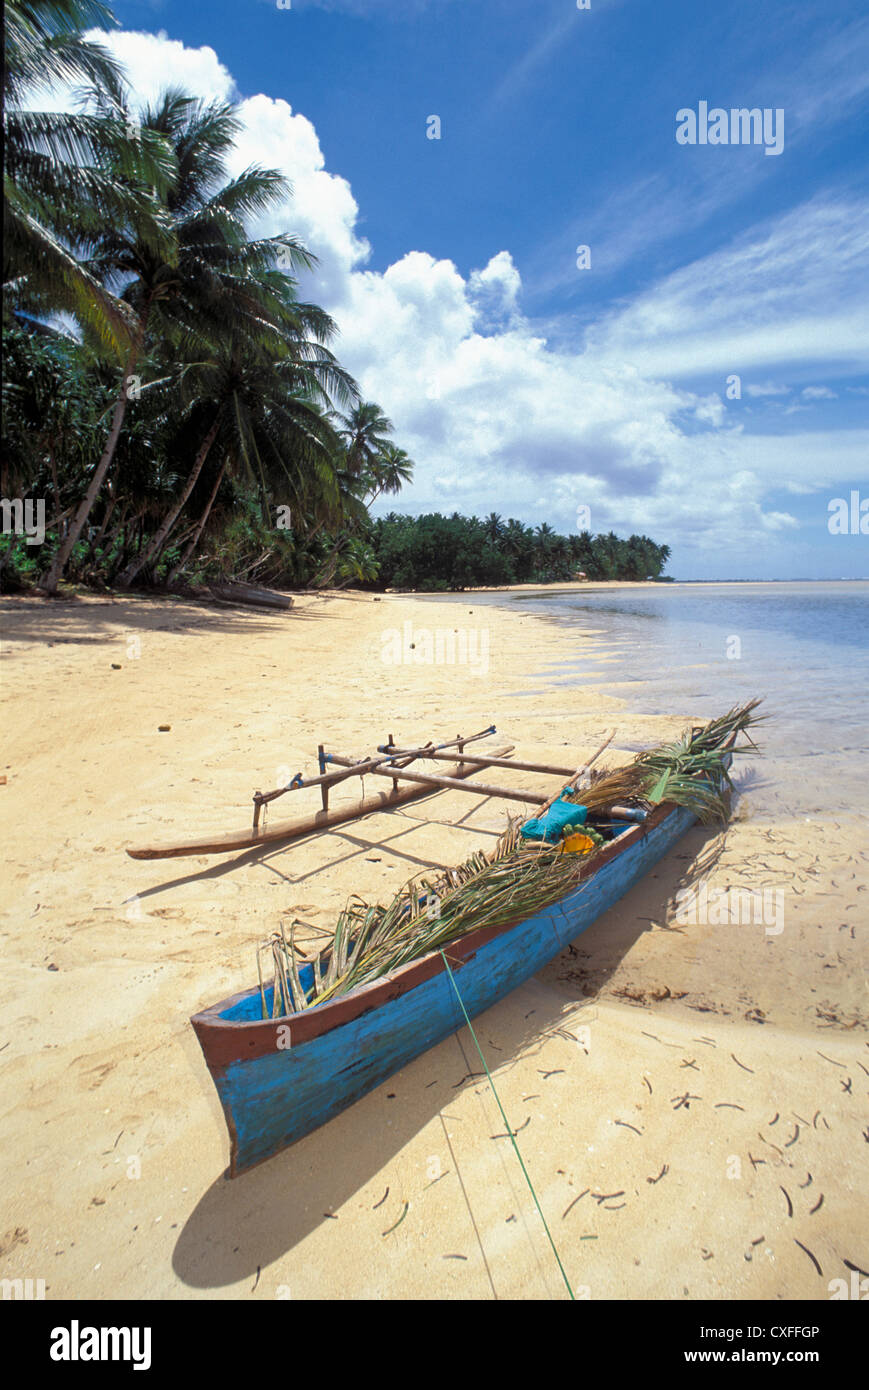 Pirogue sur la plage bordée de palmiers, village de Walung, Kosrae, la Micronésie. Banque D'Images